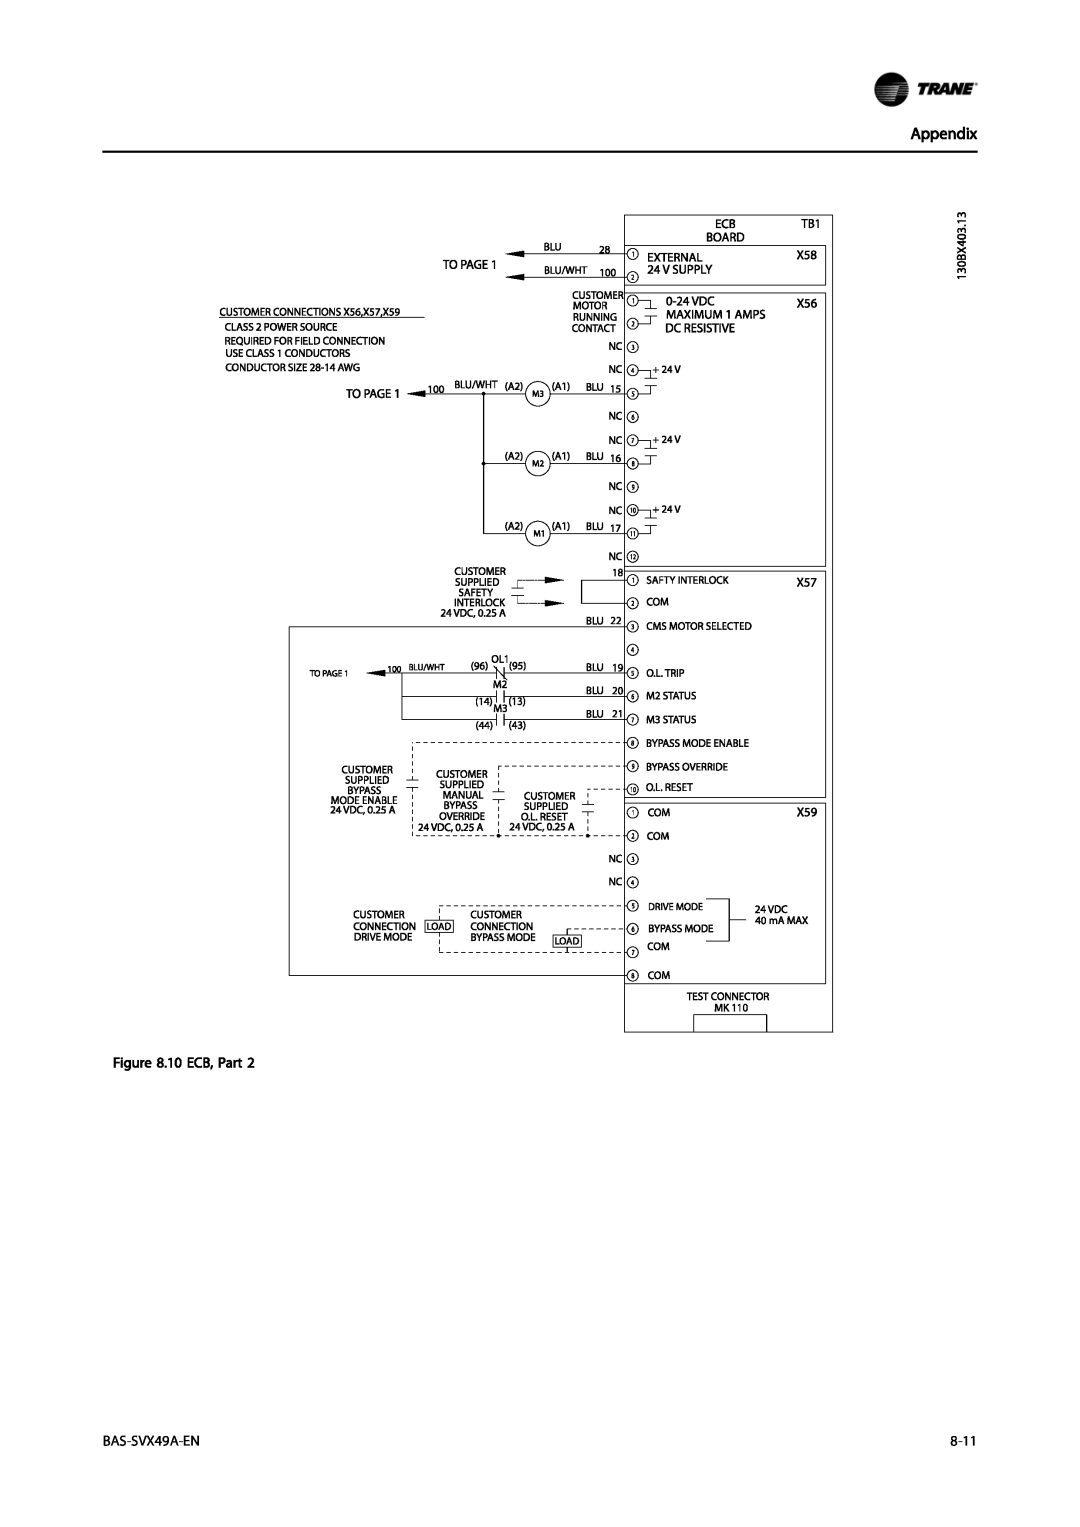 Trane Vertical Bypass/Non Bypass Panel, TR200 specifications Appendix, 10 ECB, Part, BAS-SVX49A-EN, 8-11 